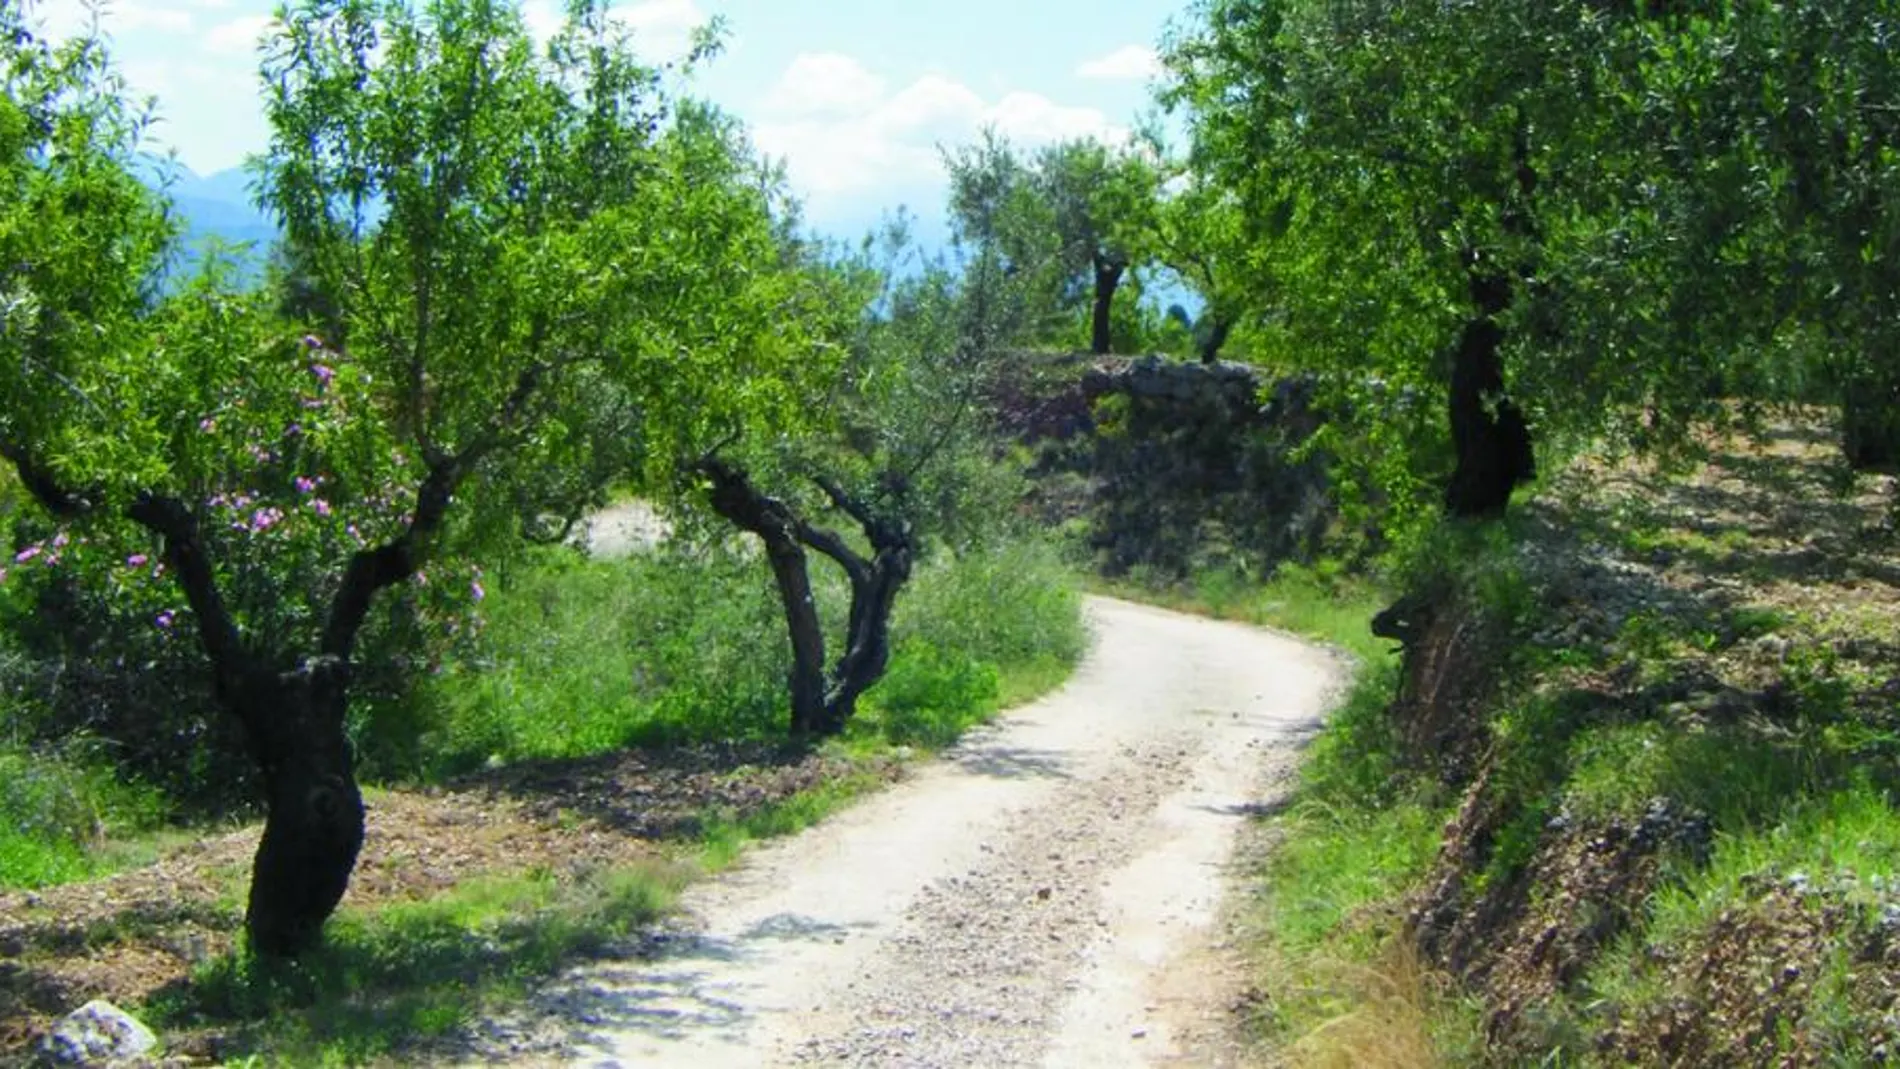 Las vías pecuarias recorren de norte a sur la Comunitat Valenciana. Su conservación las han convertido en corredores ecológicos donde habitan importantes especies de flora y fauna